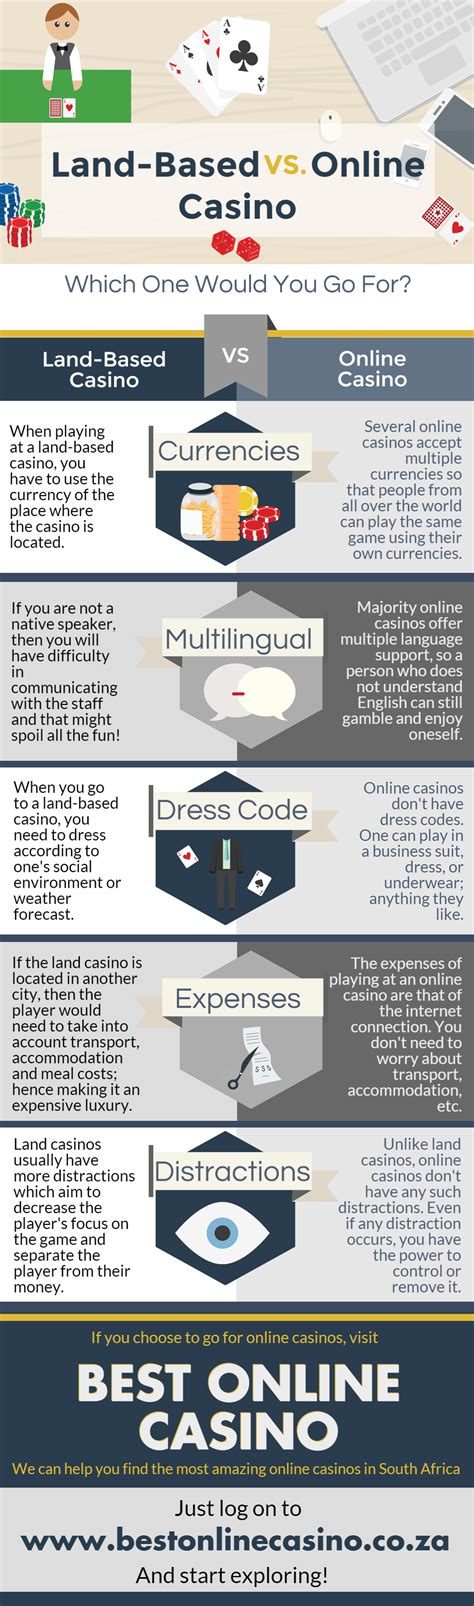 land based casino vs online casino